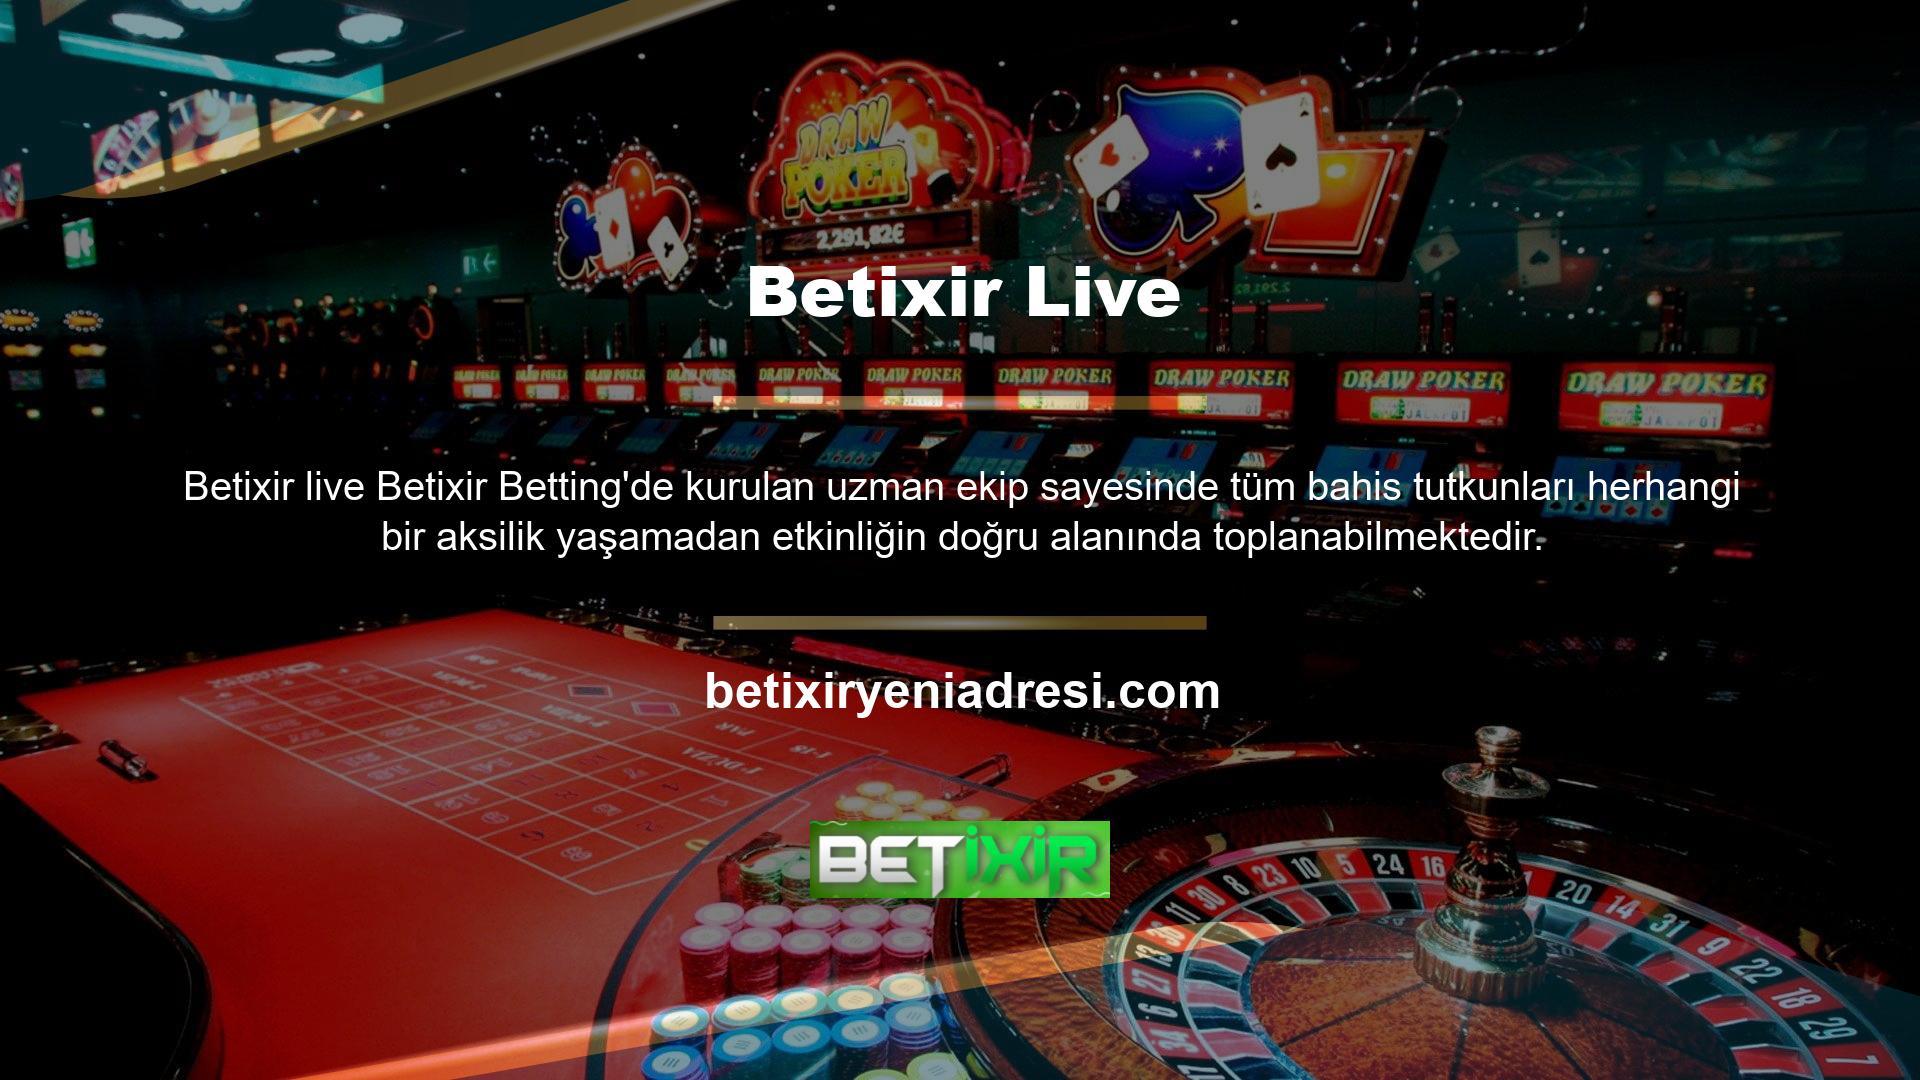 Bahisçiler, spor bahisleri ve casino oyunlarında Betixir müşteri hizmetlerinden tam olarak yararlanmak için Betixir bahis spreadlerini kullanabilirler